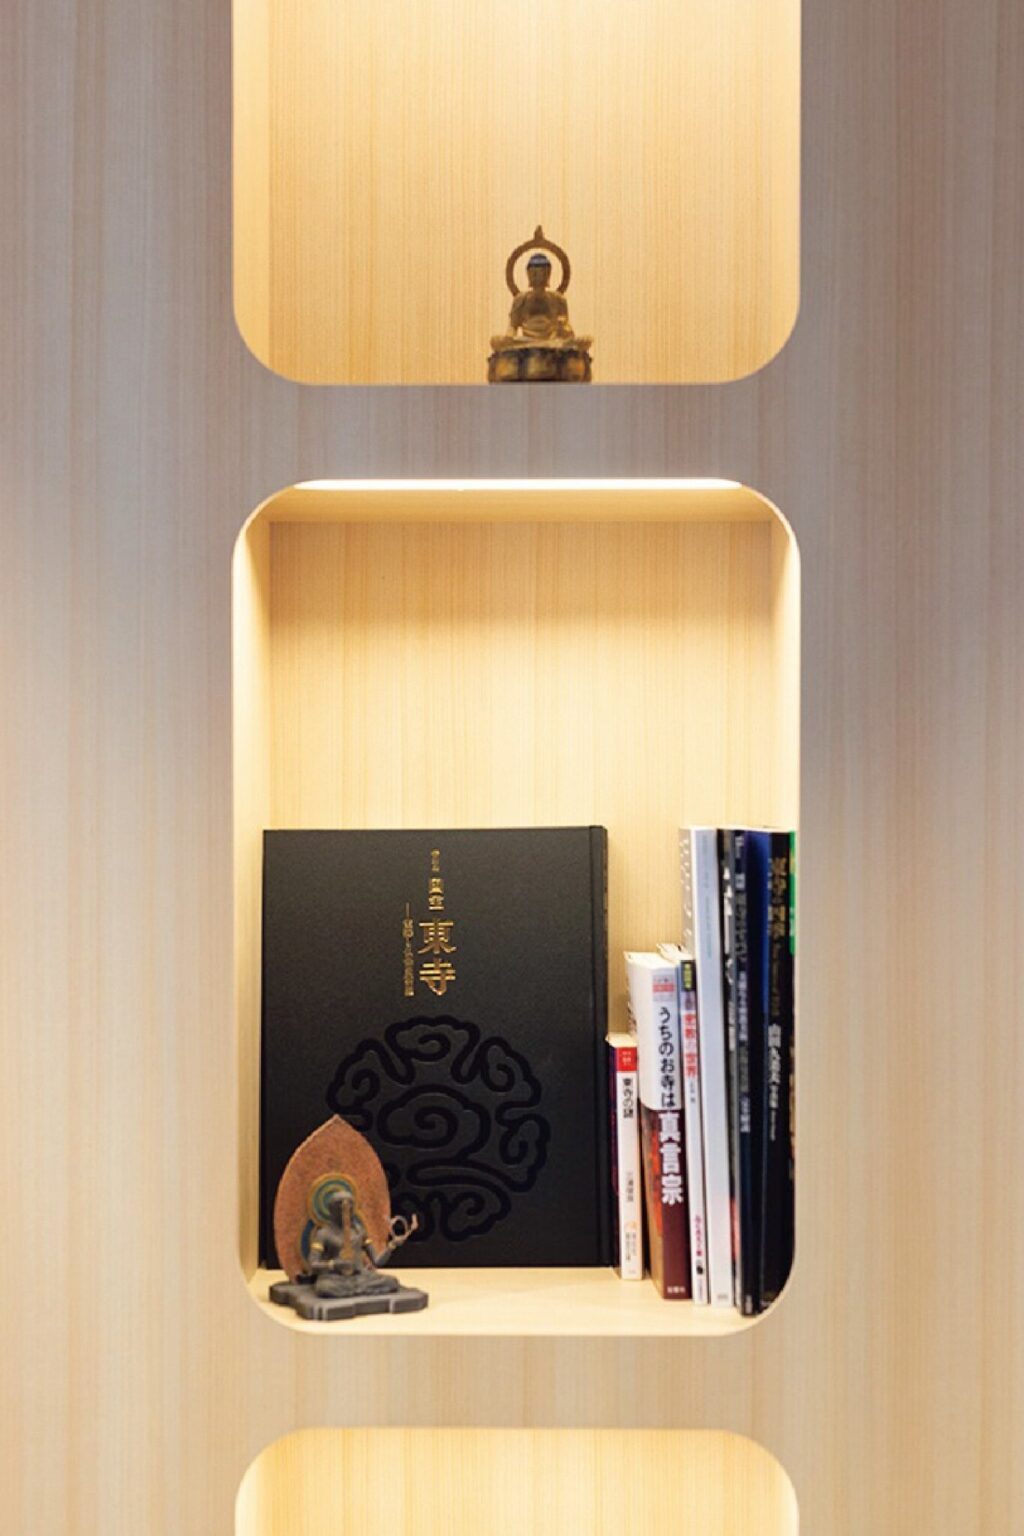 東寺や弘法大師に関連した書籍がそろう本棚は、五重塔の中心で塔を支える心柱がテーマ。